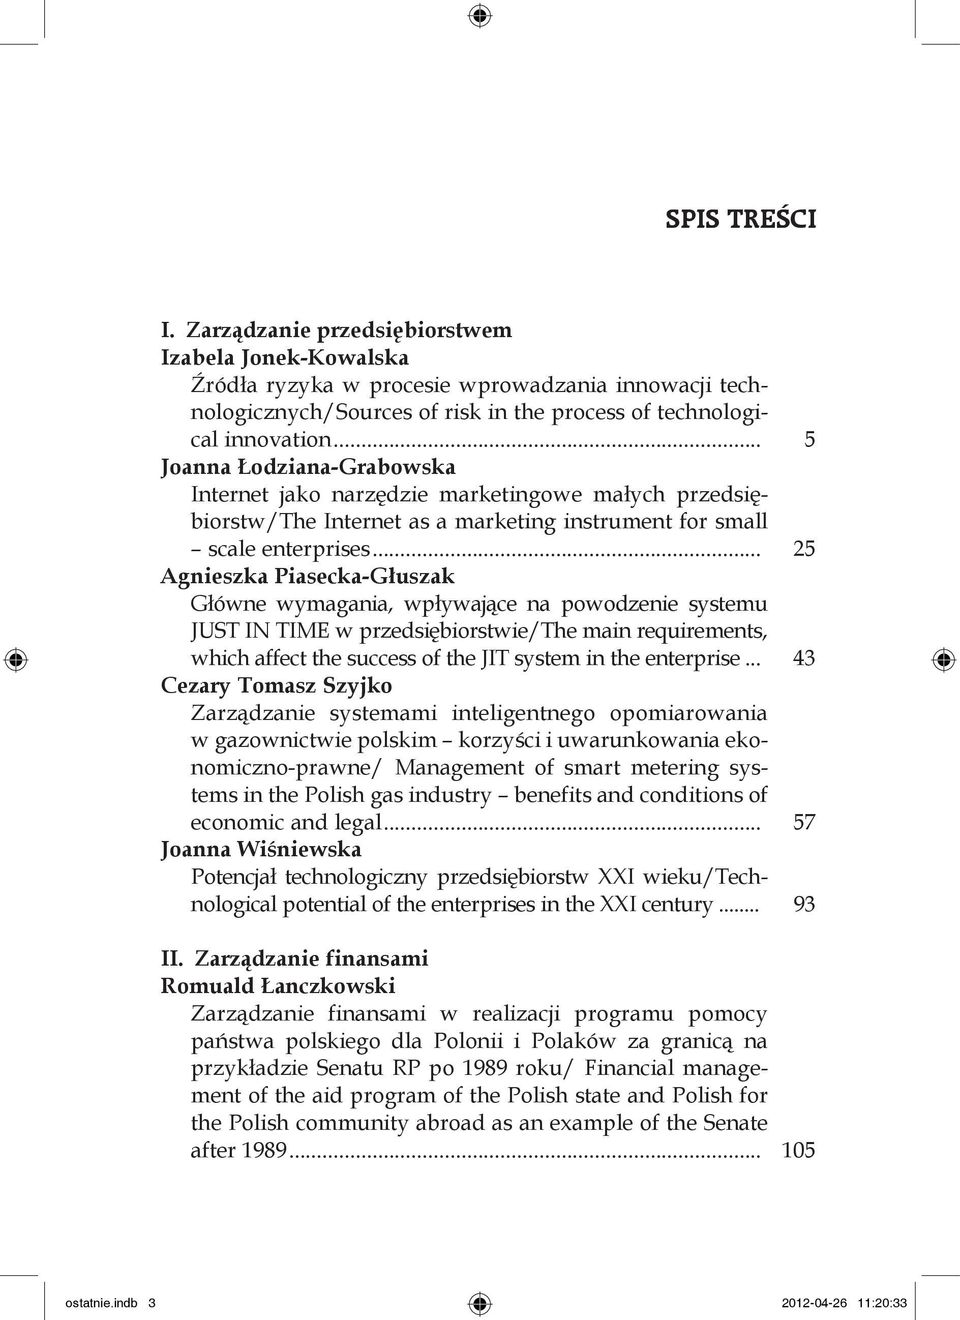 Główne wymagania, wpływające na powodzenie systemu JUST IN TIME w przedsiębiorstwie/the main requirements, which affect the success of the JIT system in the enterprise... 43 Cezary Tomasz Szyjko.